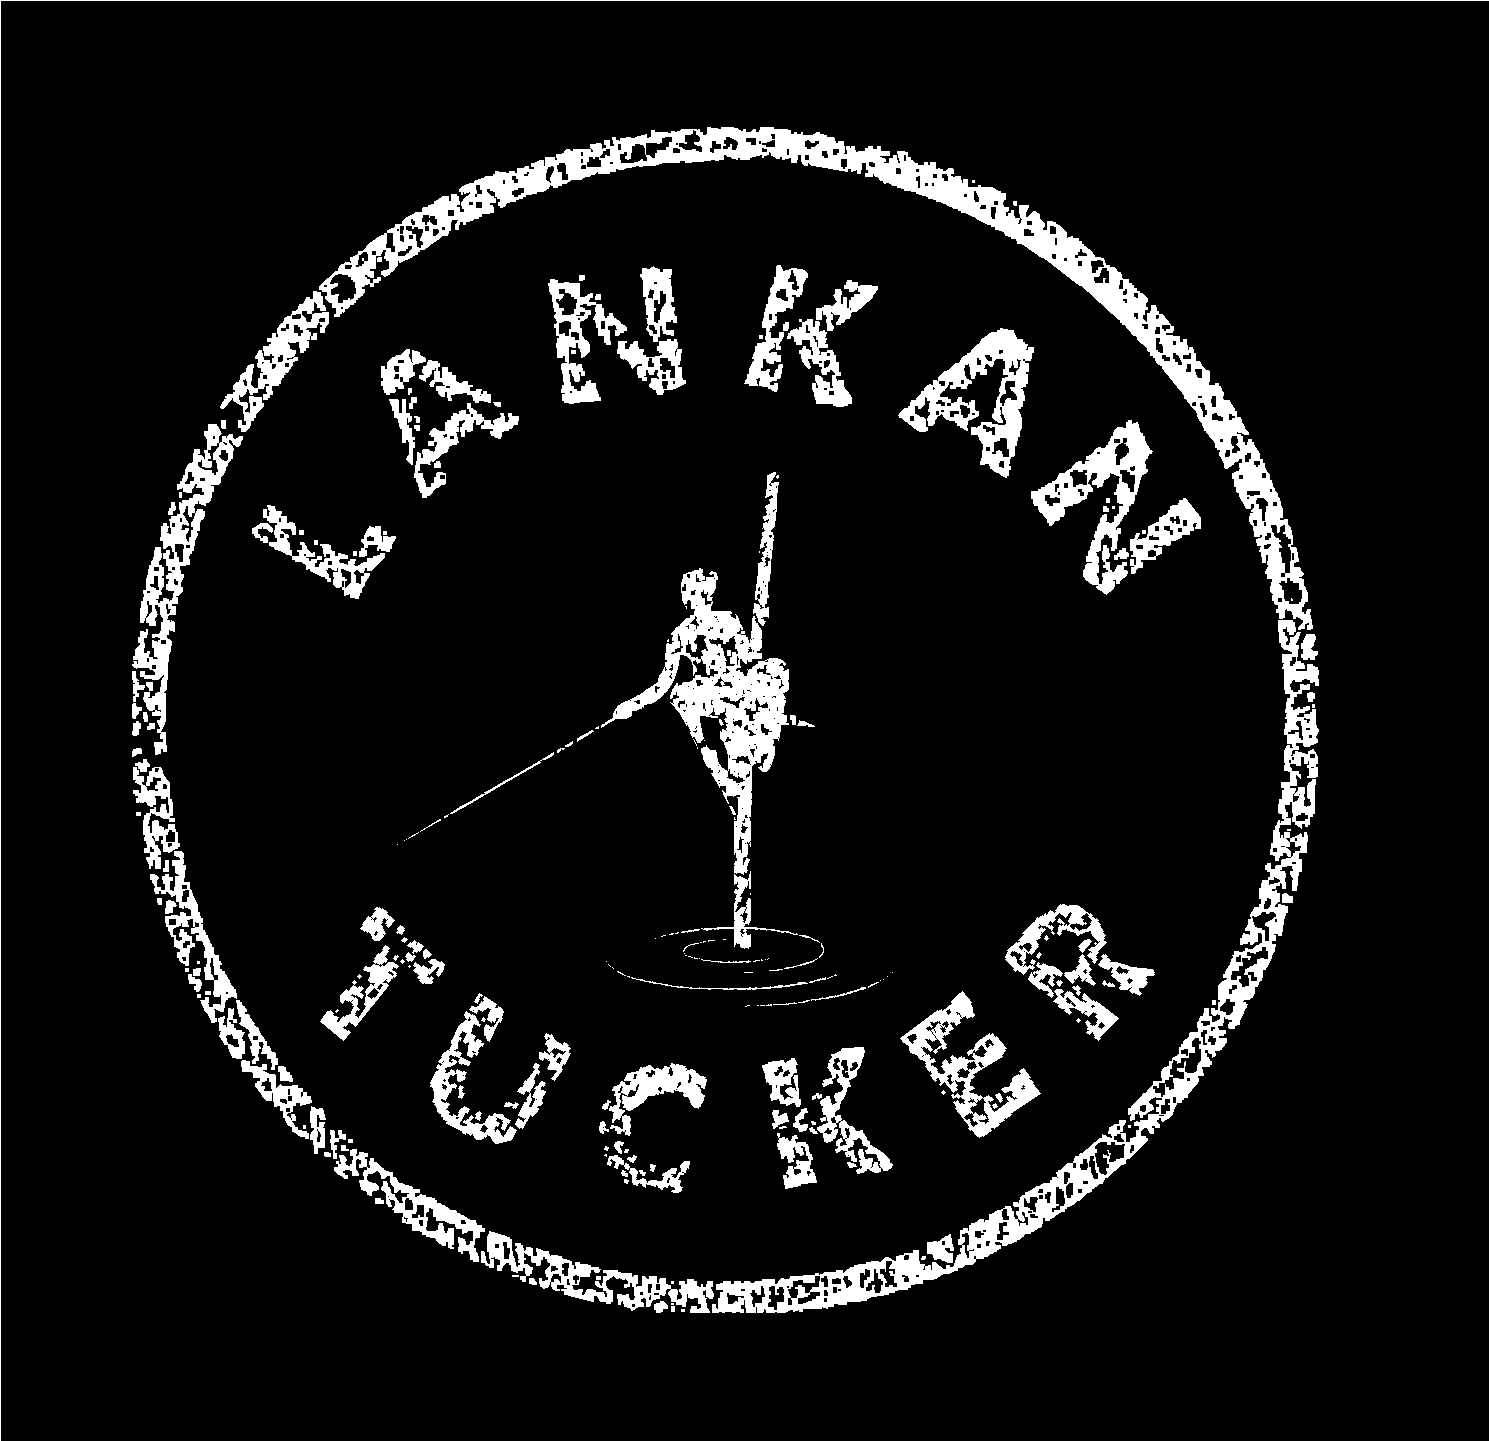 Lankan Tucker